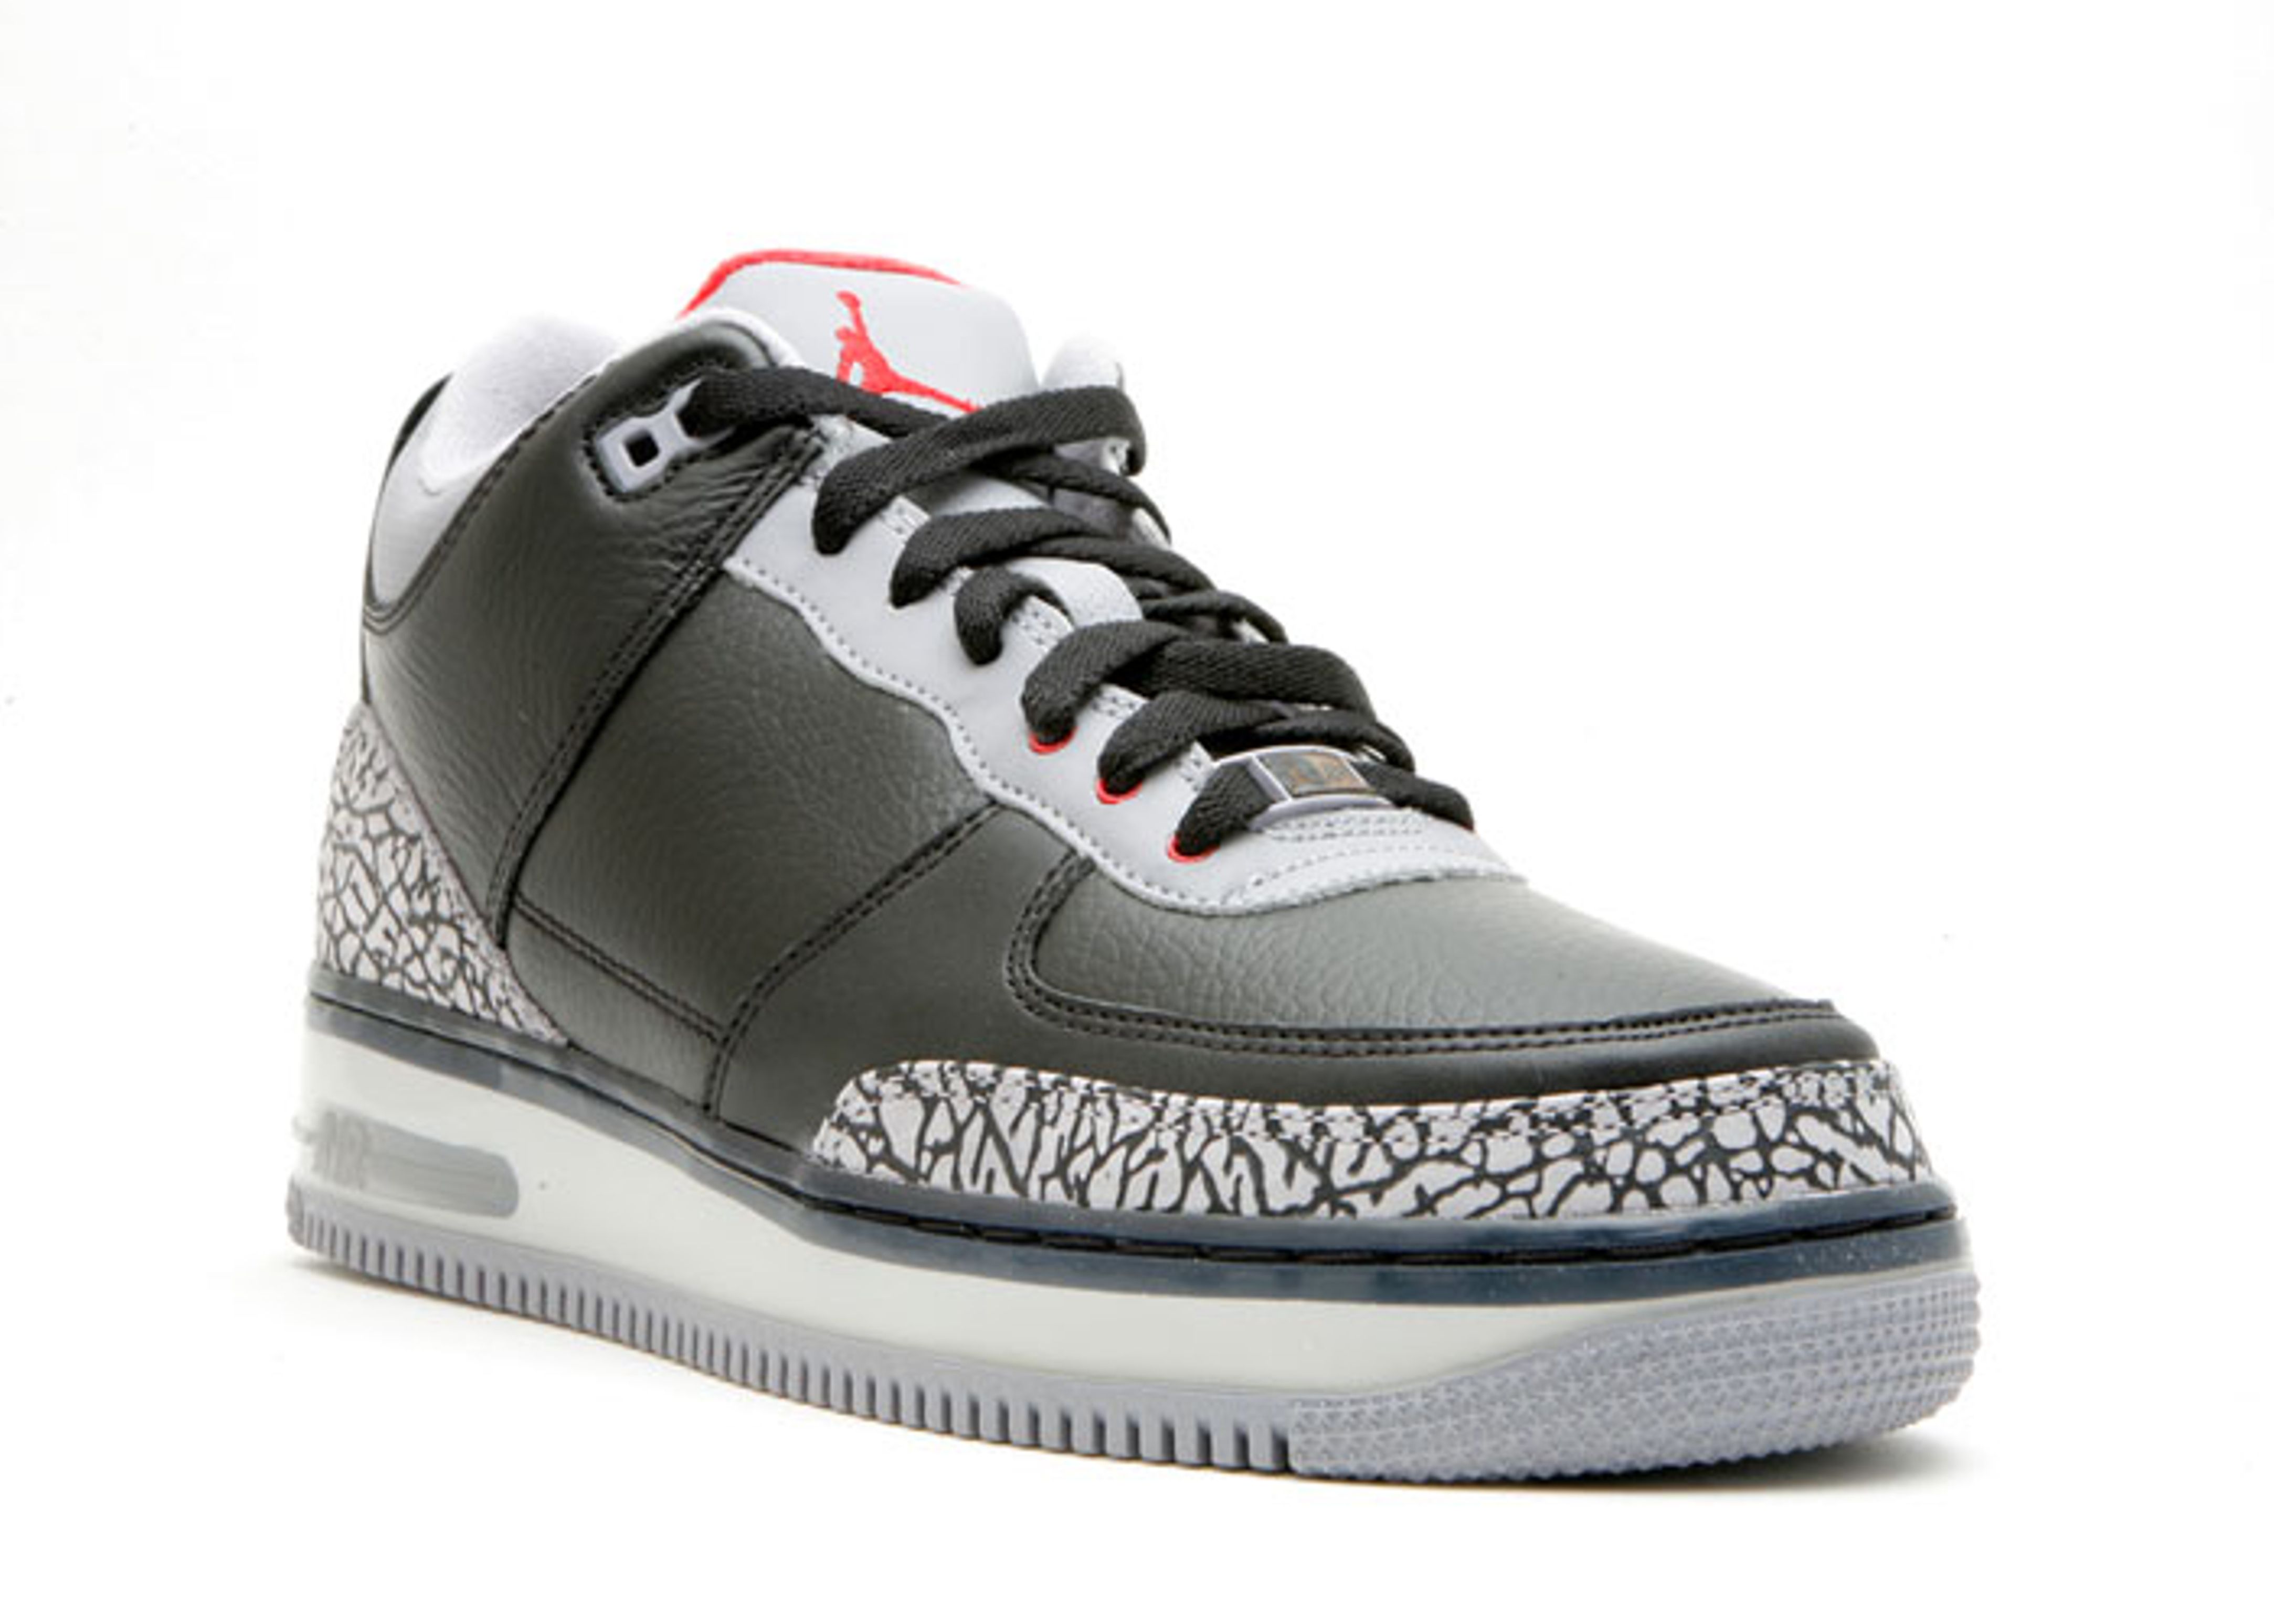 Nike Ajf 3 Black Cement - Black - Low-top Sneakers